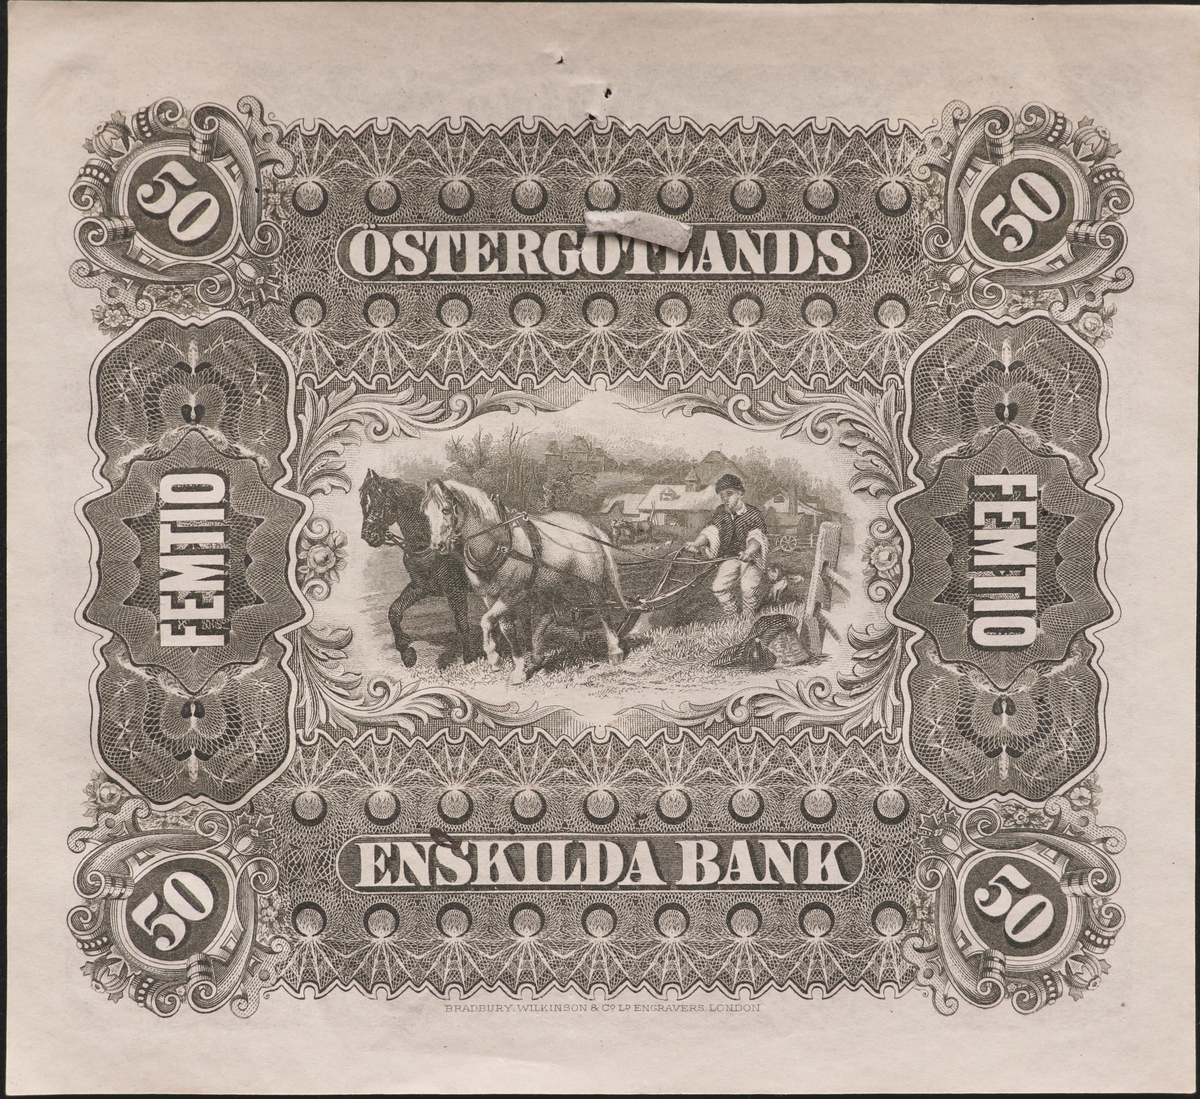 Tre sedlar på femtio kronor från Östergötlands Enskilda Bank från1894. Serienummer 12408, 19402 och 19403, tryckt till höger på sedeln. Framsidan har grå, röda och gräna färger. Tre signaturer på sedeln. Högst upp i mitten finns Östergötlands landskapsvapen. Längst till vänster är en bild på två kvinnor, en står och en sitter.
Baksidan har en bild av två hästar förspända för en plog och är gråfärgad.
En av sedlarna är makulerad med fyra hål i form stjärnor. En sedel är fastklistrad på en pappskiva, de andra två har en klisterlapp på sedeln där den suttit klistrad på en tavla. Två av sedlarna har hål som efter nålar.
Tillstånd vid förvärv: Några vikningslinjer, men annars i gott skick. En av sedlarna har avskav efter att klisterlappar tagits bort..